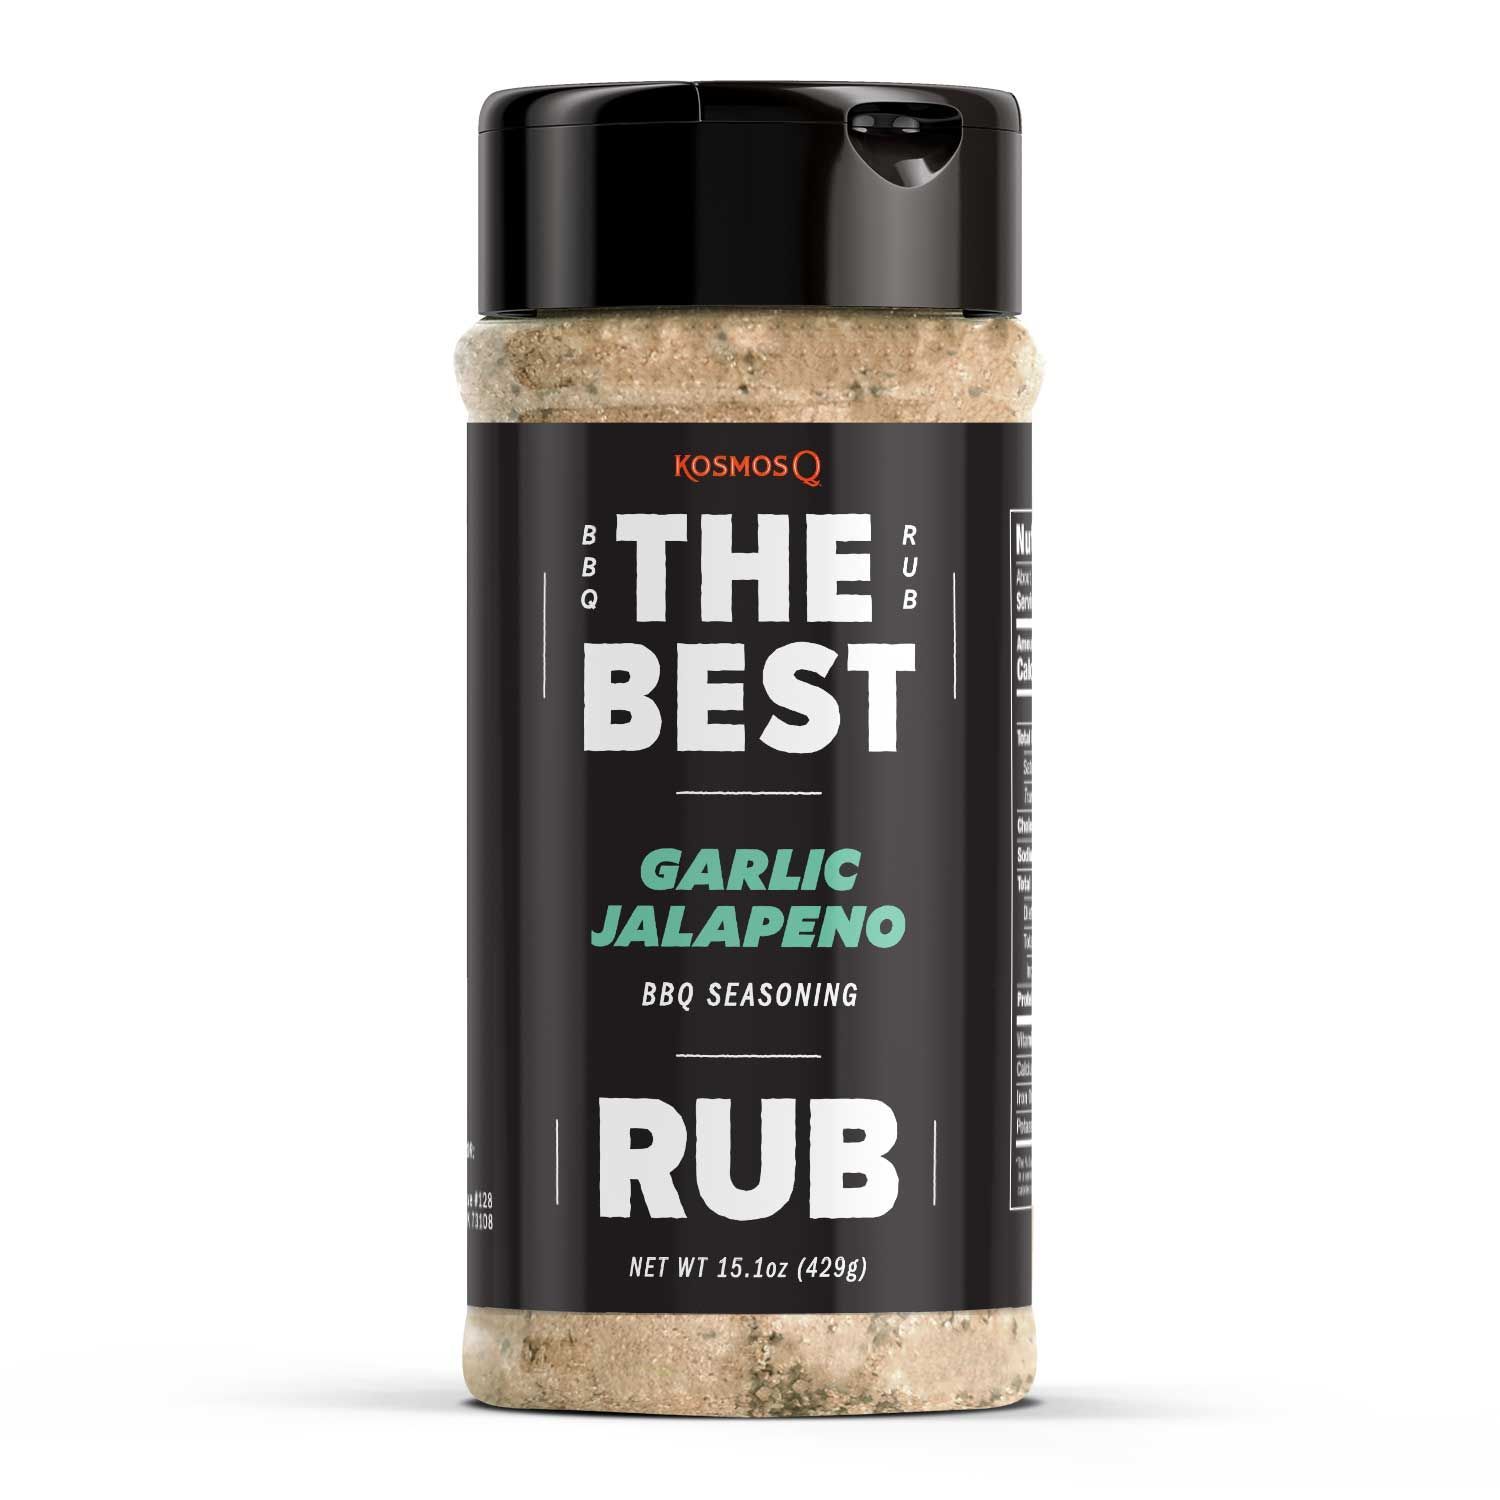 https://kosmosq.com/cdn/shop/products/kosmo-s-q-barbecue-rubs-the-best-garlic-jalapeno-rub-30170541424799_1500x.jpg?v=1628082739